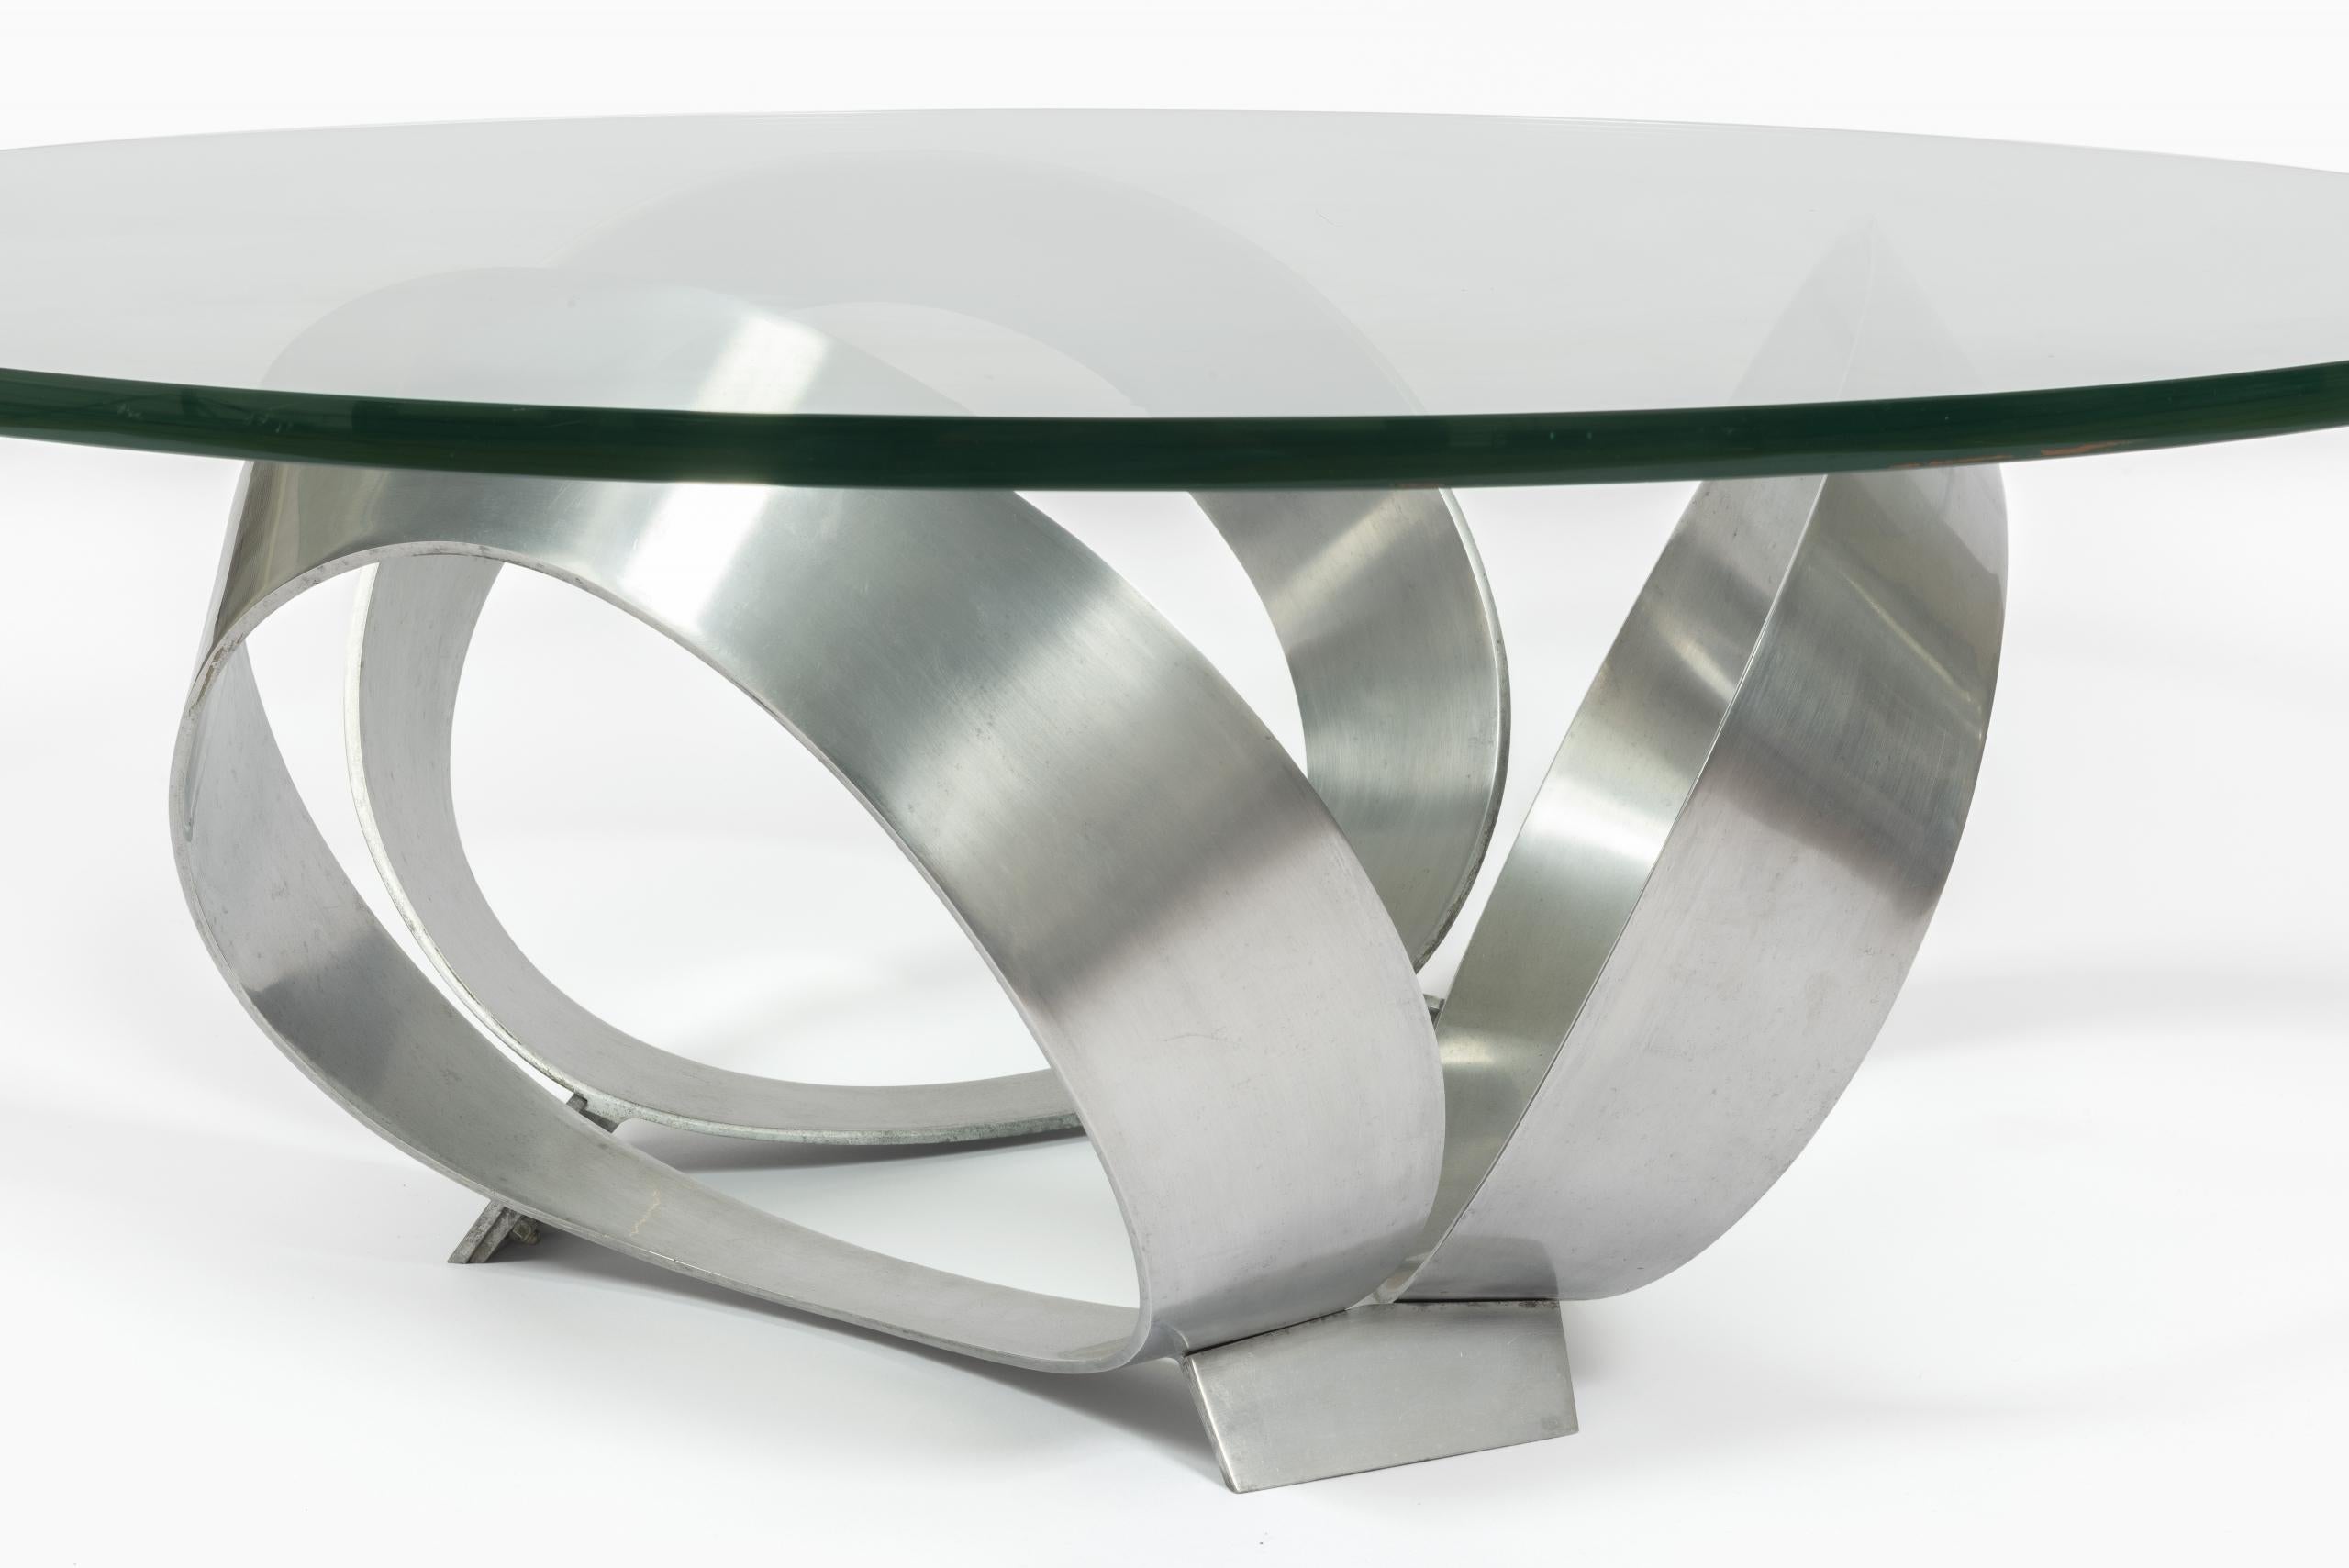 Table basse des années 1960 au design minimaliste de Knut Hesterberg pour Ronald Schmitt.

Avec base sculpturale en acier brossé et plateau en verre d’une épaisseur de 2 cm.